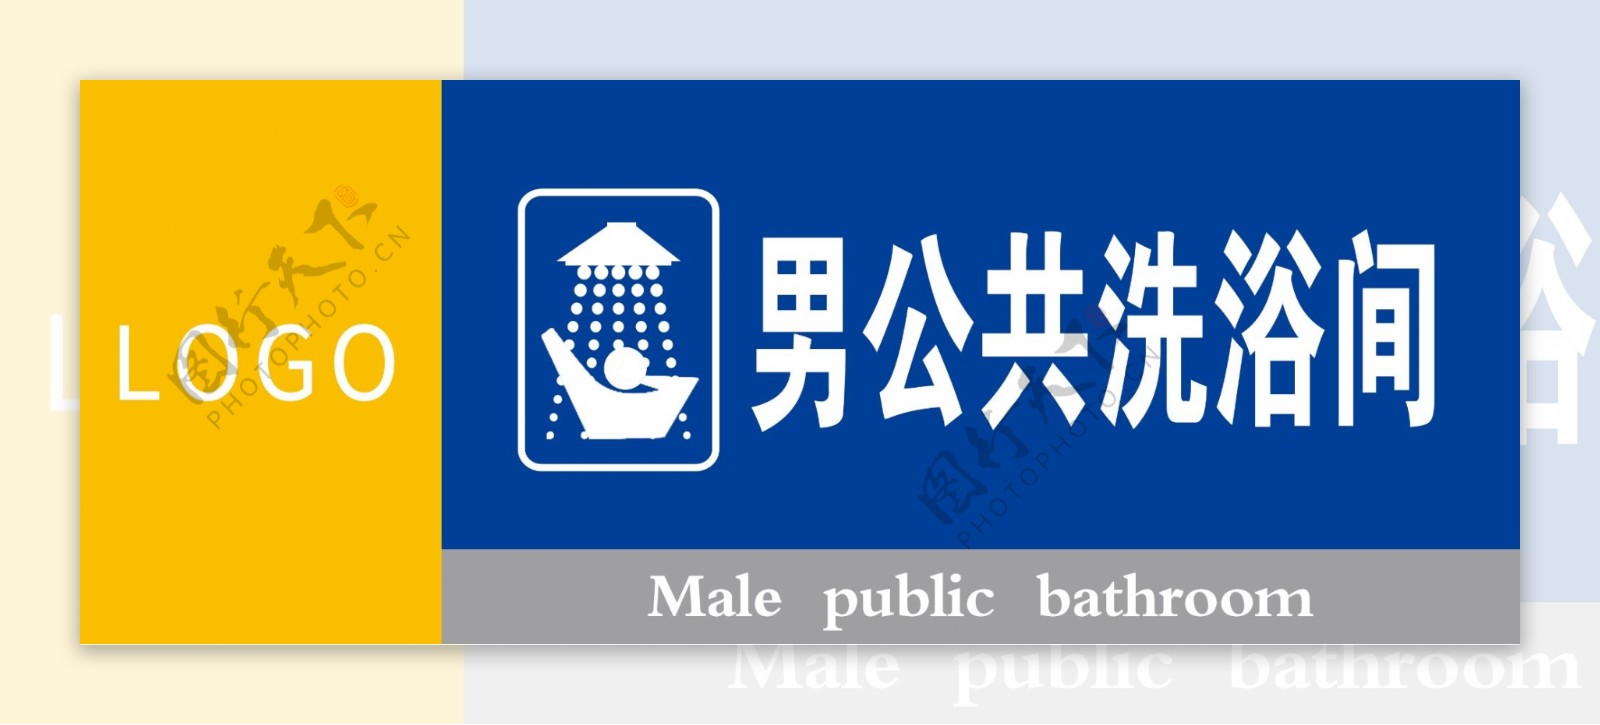 男公共洗浴间